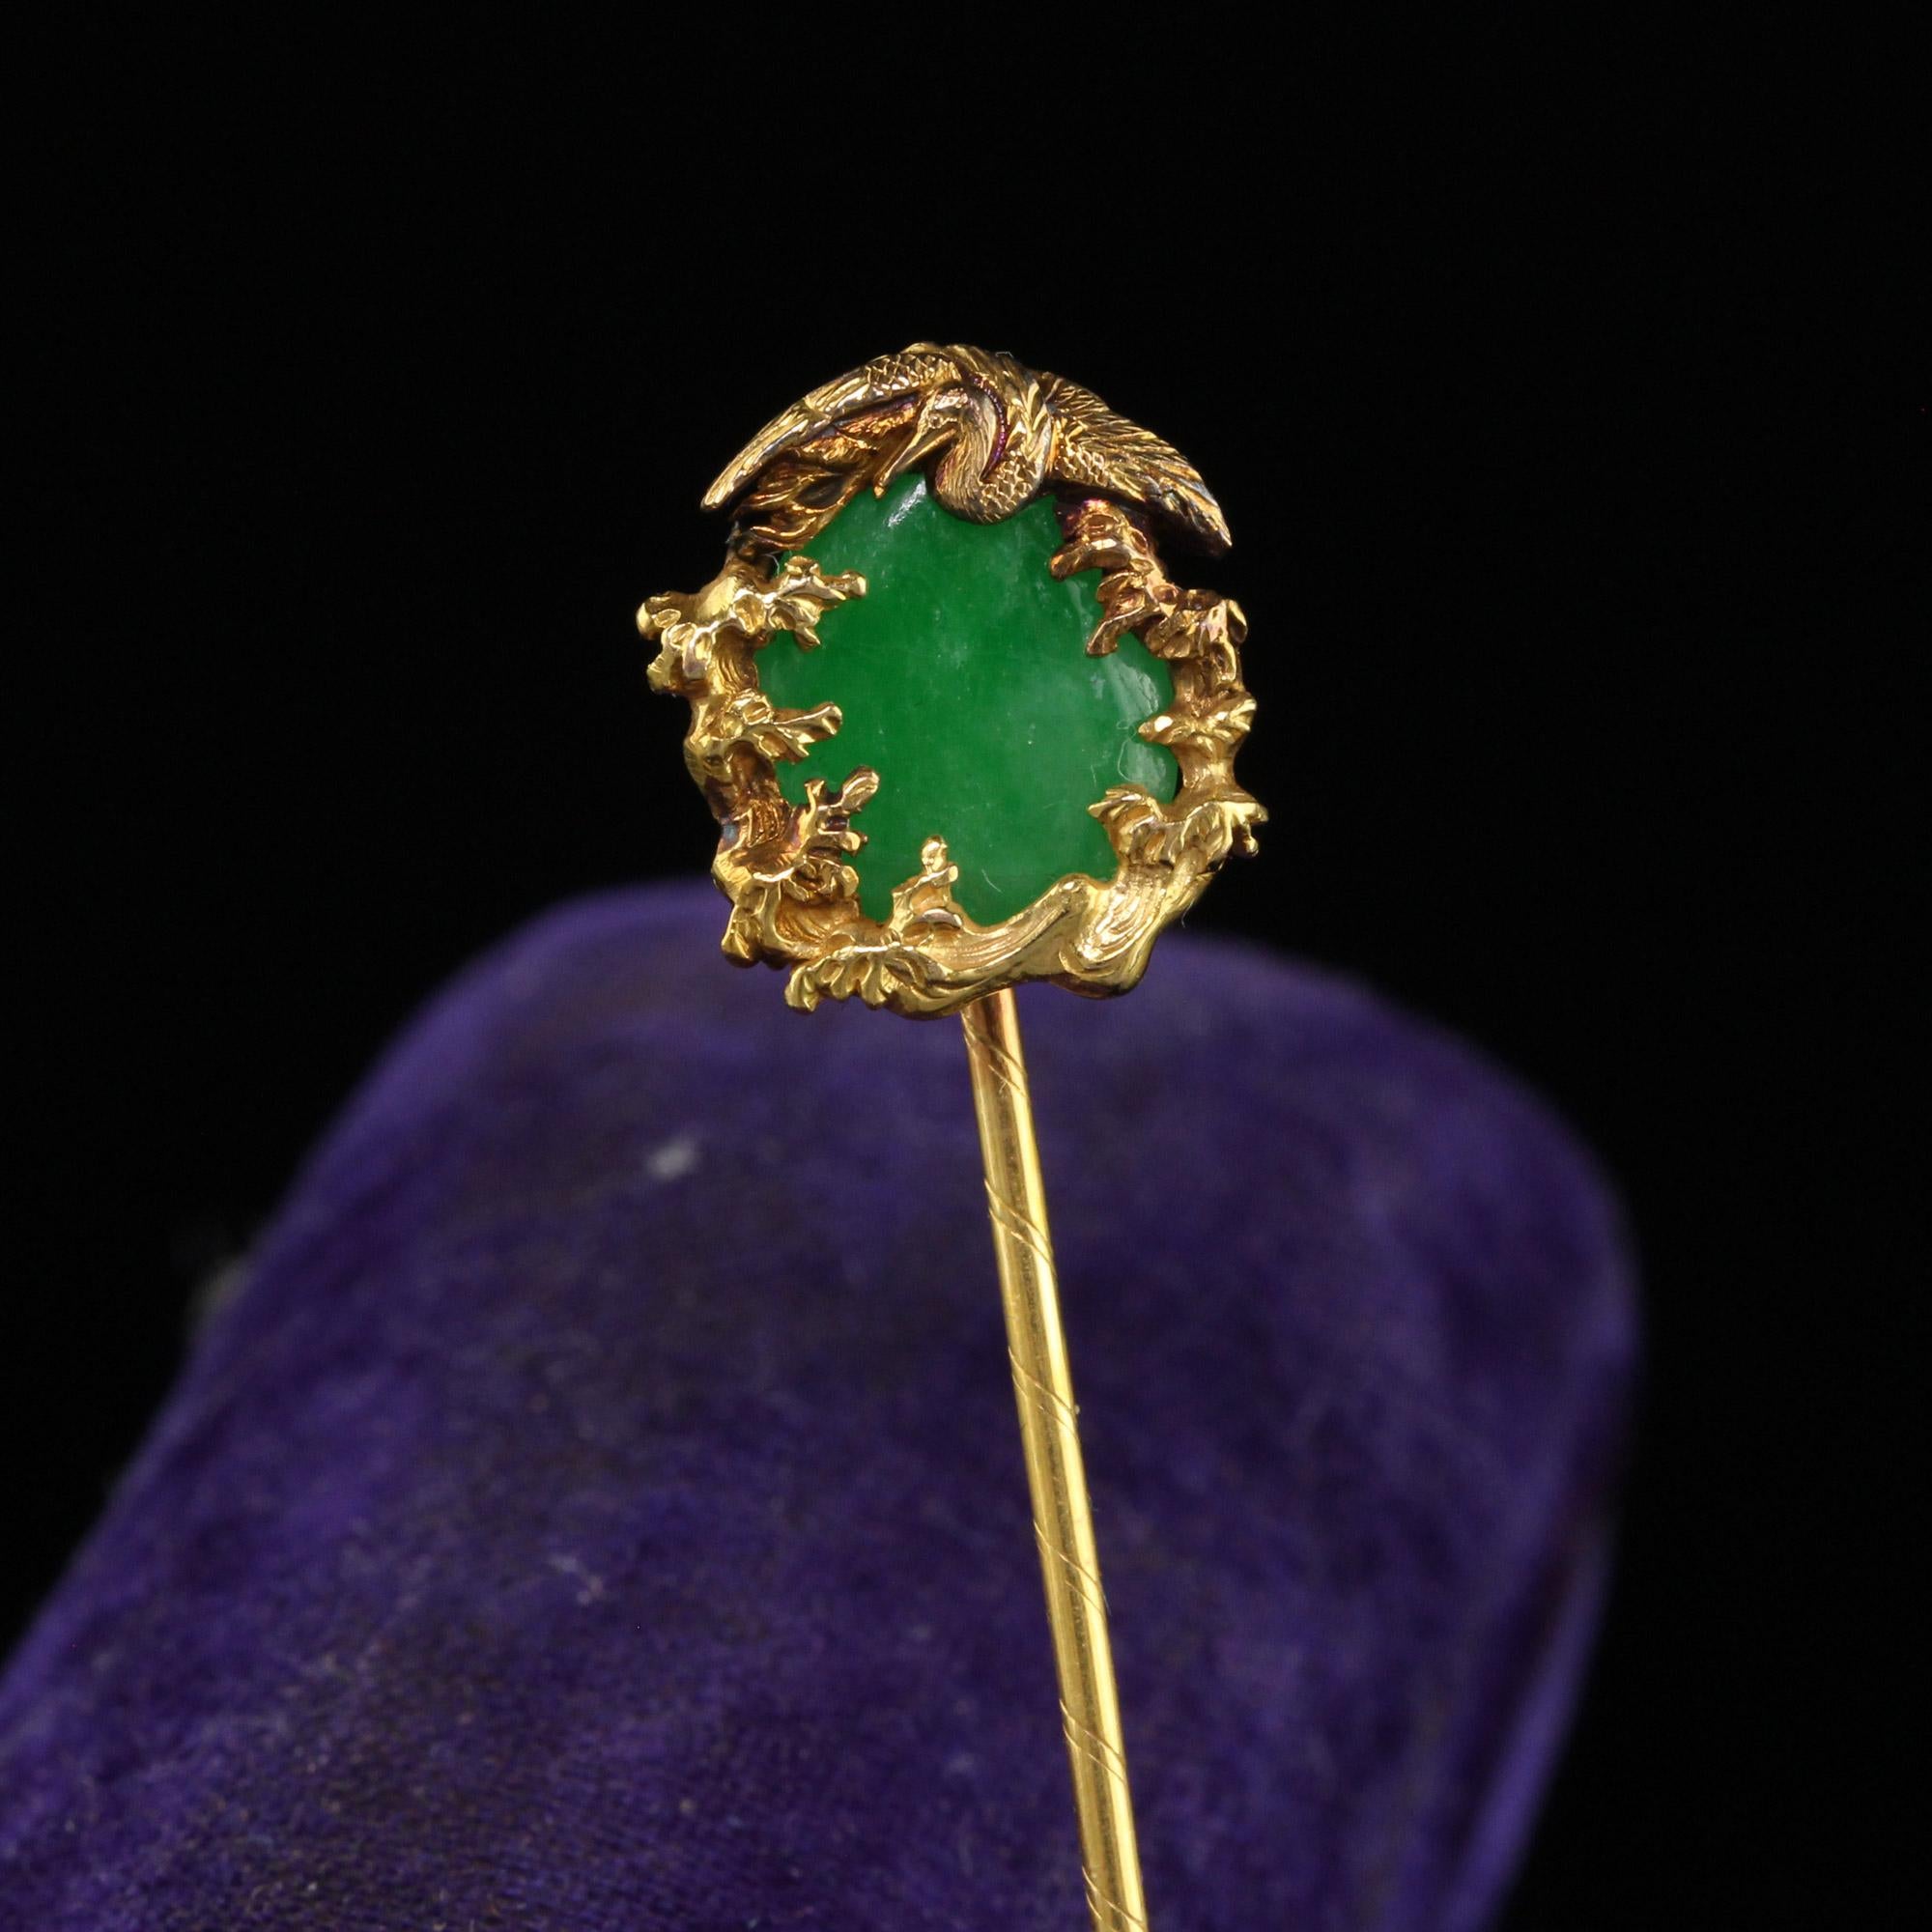 Schöne Vintage Mid Century 18K Gelbgold natürlichen Jade Kranich Stick Pin. Diese wunderschöne Jade-Anstecknadel ist aus 18 Karat Gelbgold gefertigt. In der Mitte der Brosche befindet sich eine natürliche grüne Jade. Die dargestellte Szene zeigt